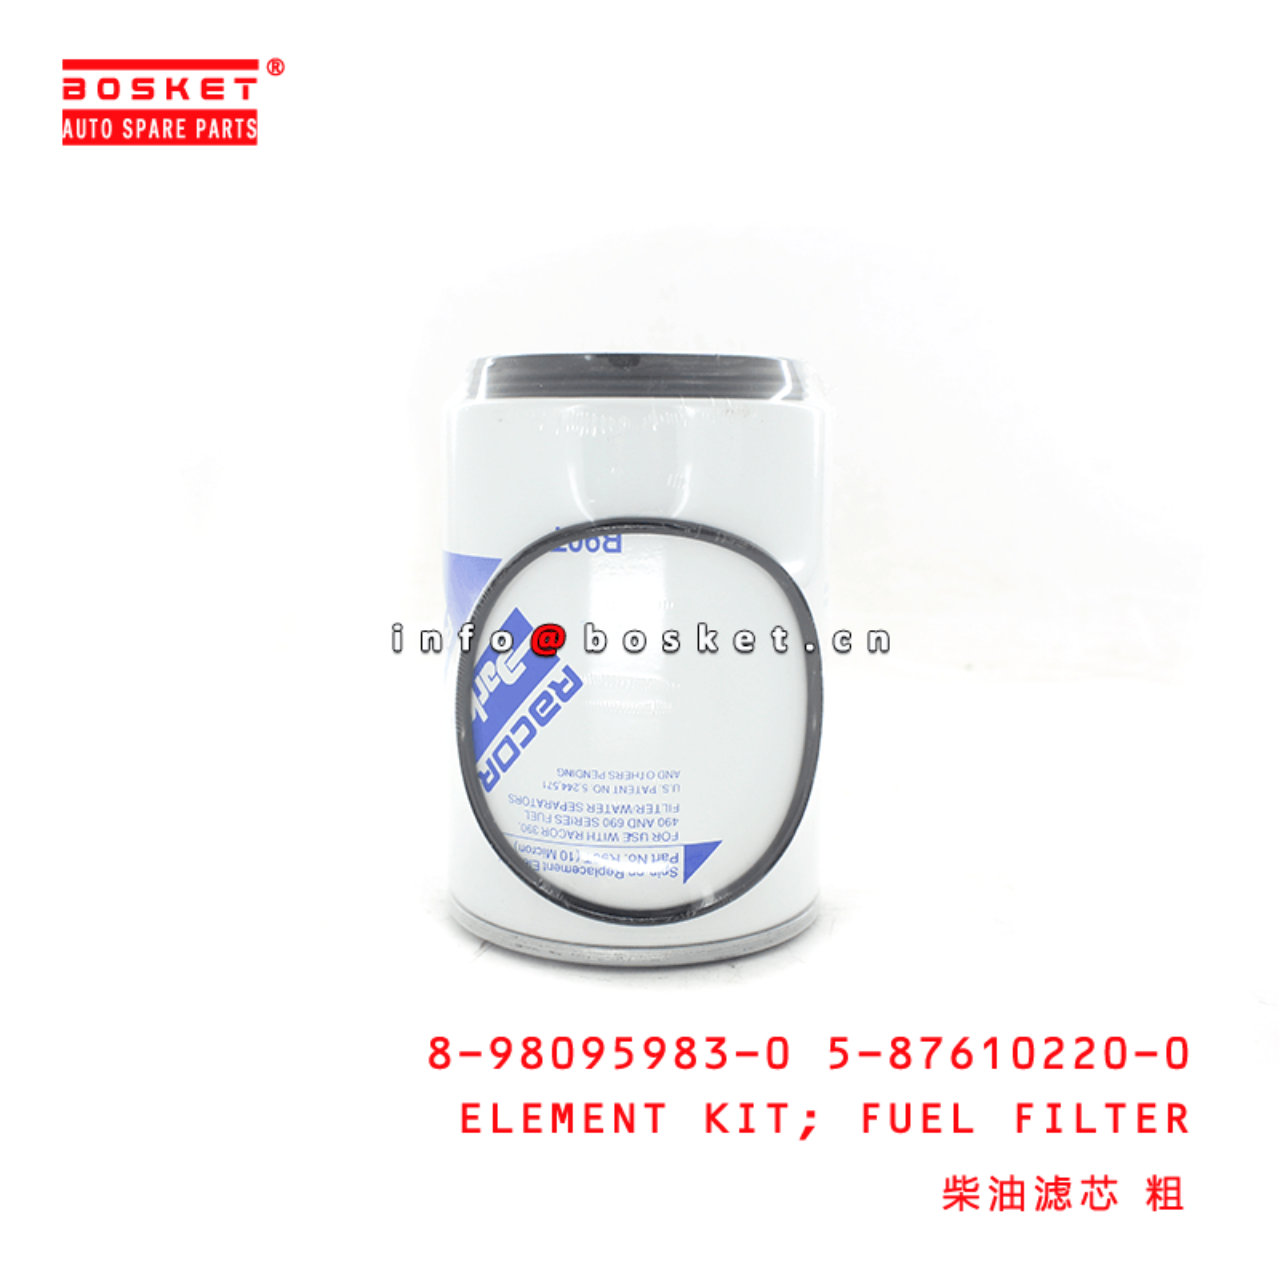 8-98095983-0 5-87610220-0 Fuel Filter Element Kit 8980959830 